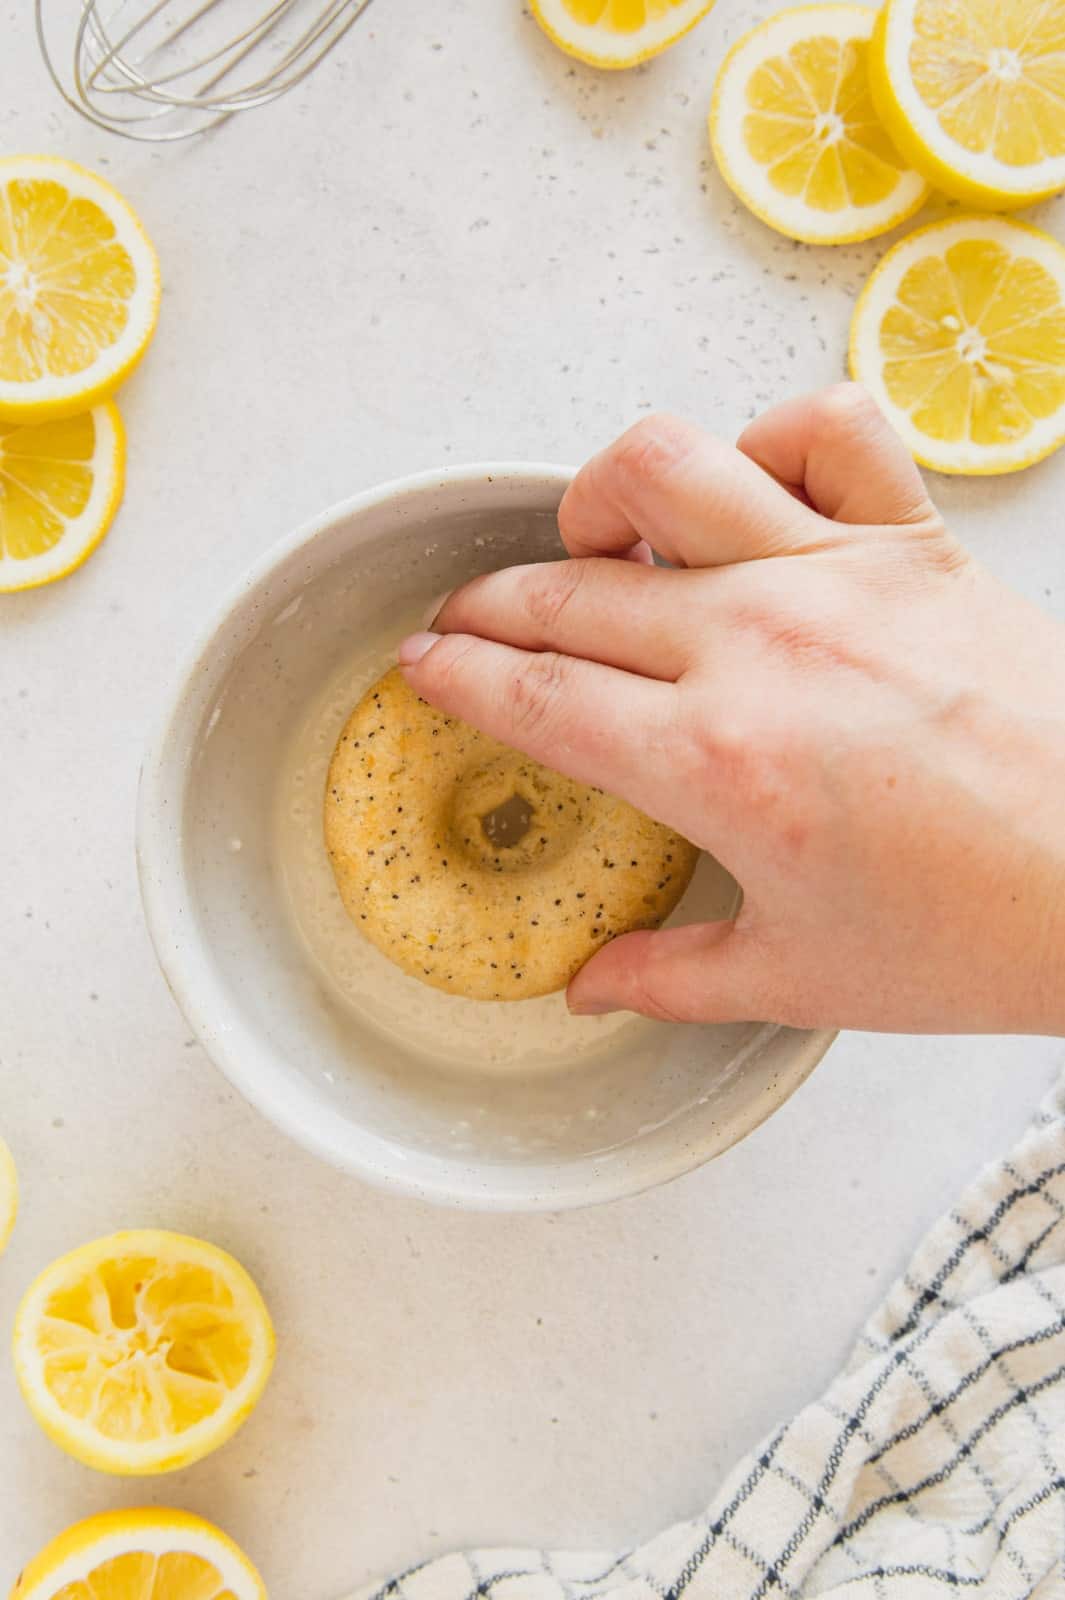 Lemon donut being dipped in an easy homemade glaze.